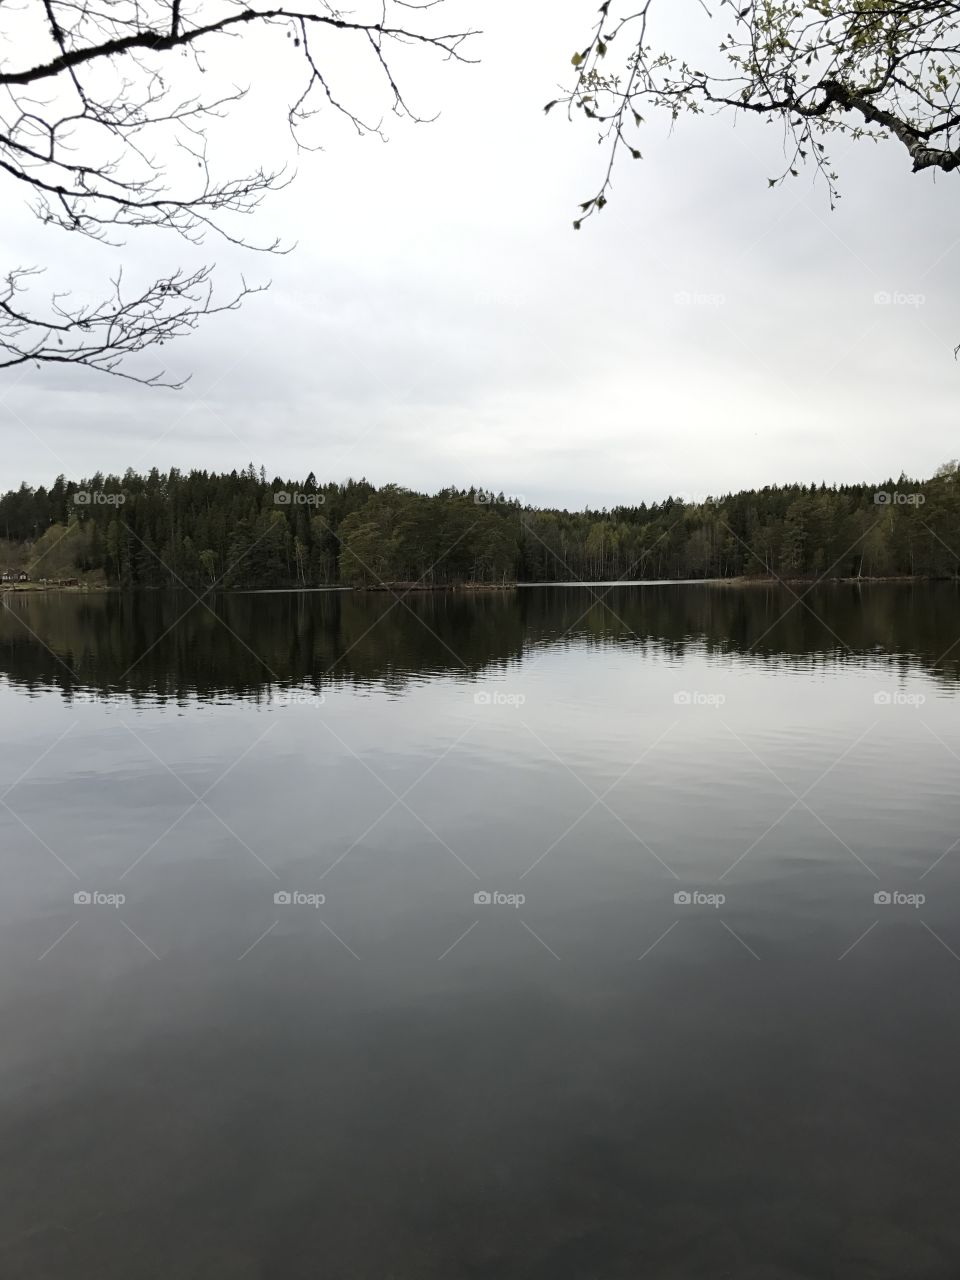 Lake nature